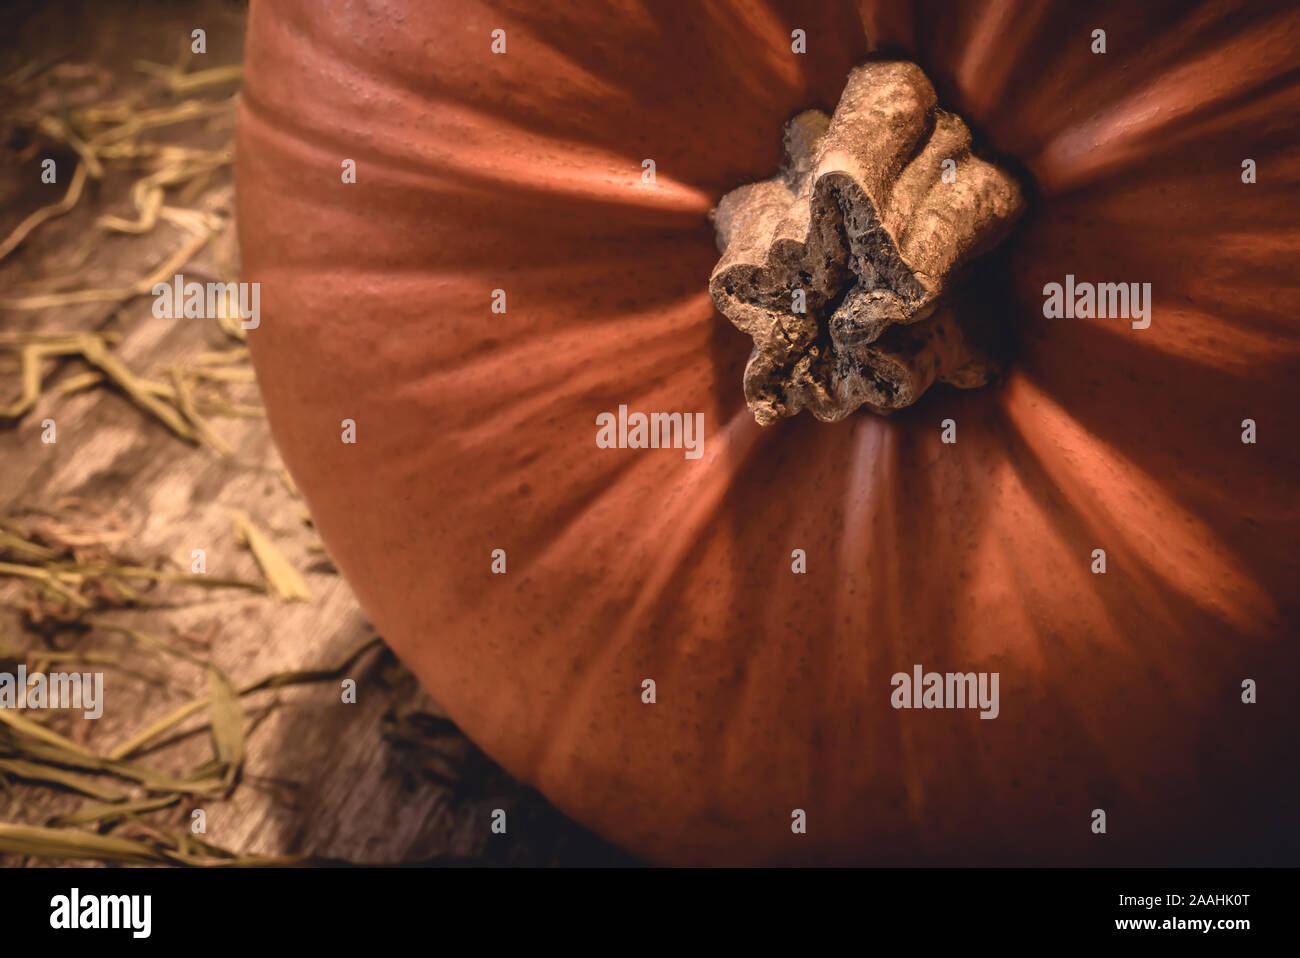 Nahaufnahme des Big Orange saisonalen Herbst Kürbis mit Stammzellen auf ländlichen natürliche Holz und Heu in der Landschaft - Begriff der traditionellen Halloween Feier Stockfoto